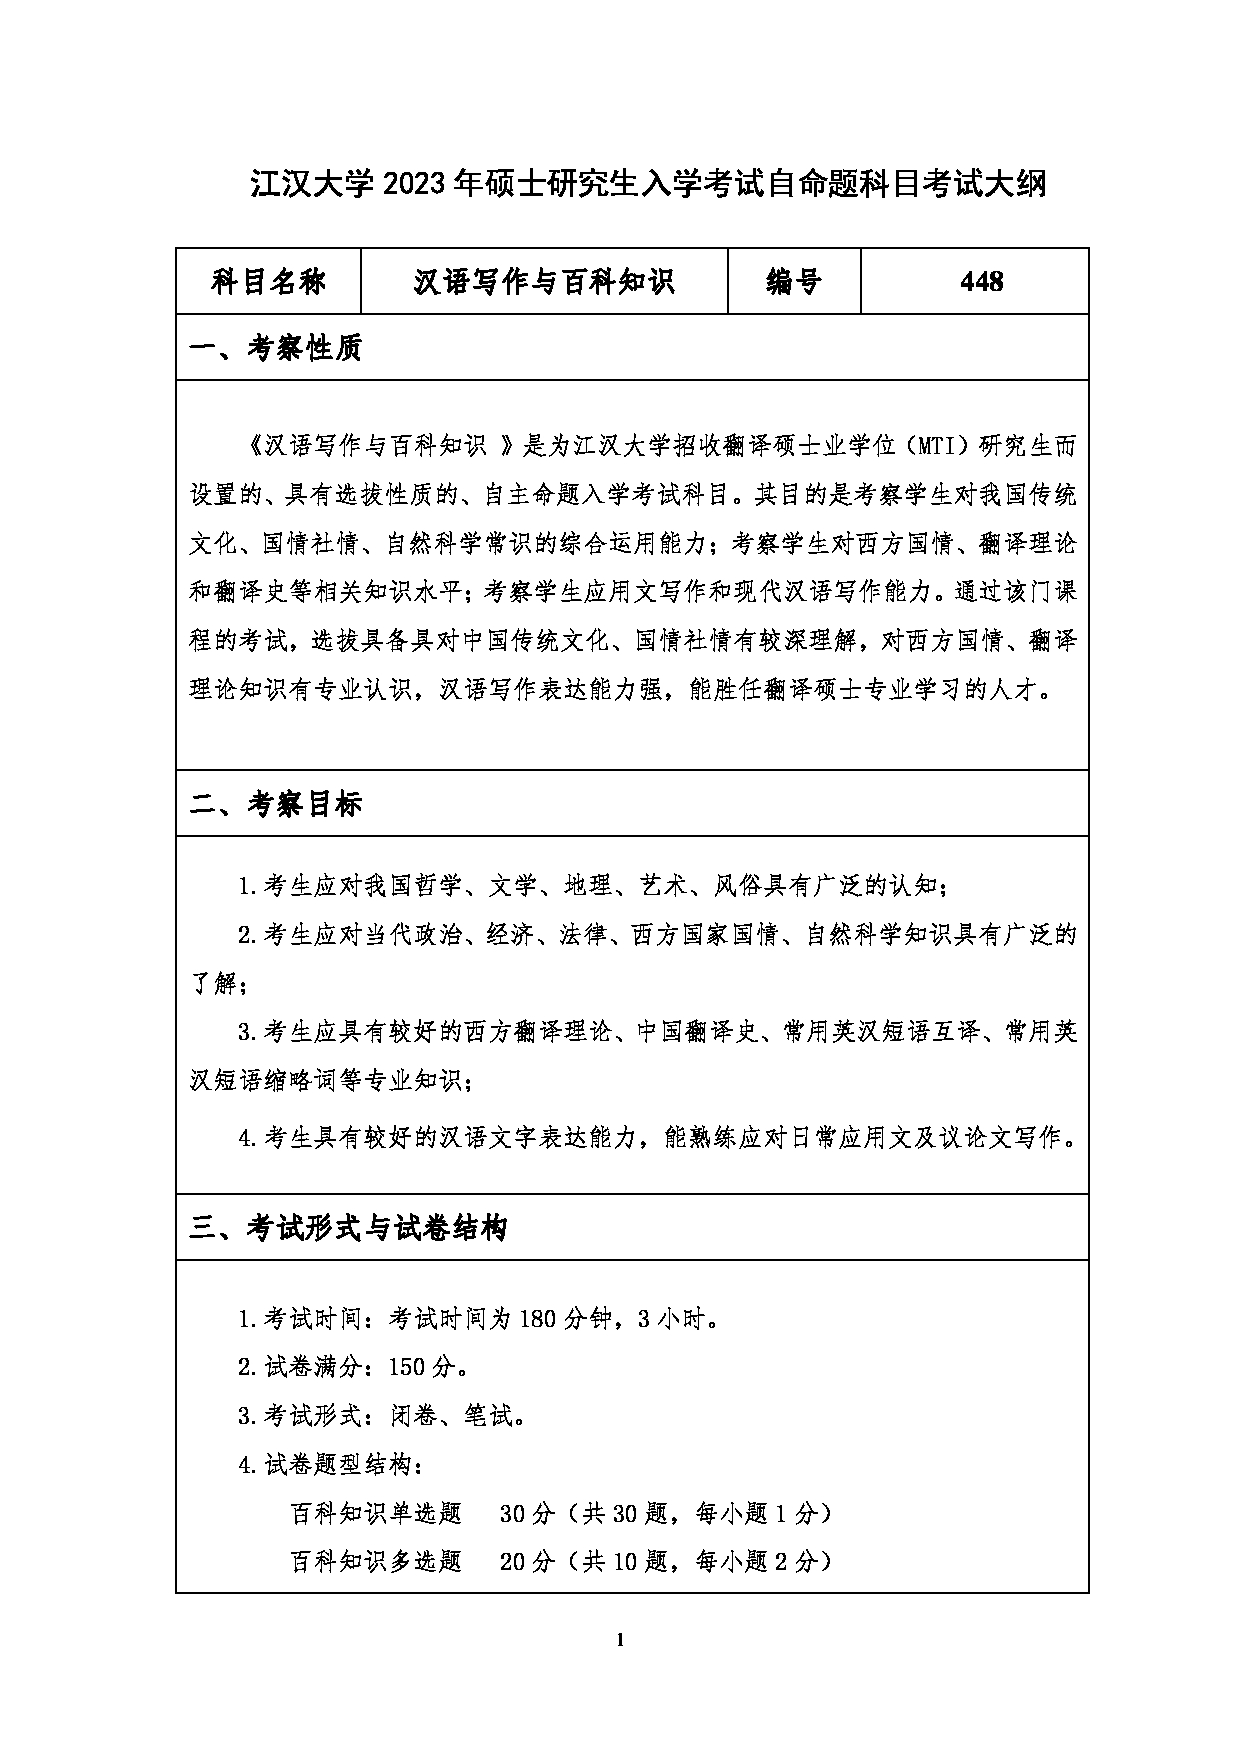 2023考研大纲：江汉大学2023年考研自命题科目 448汉语写作与百科知识 考试大纲第1页